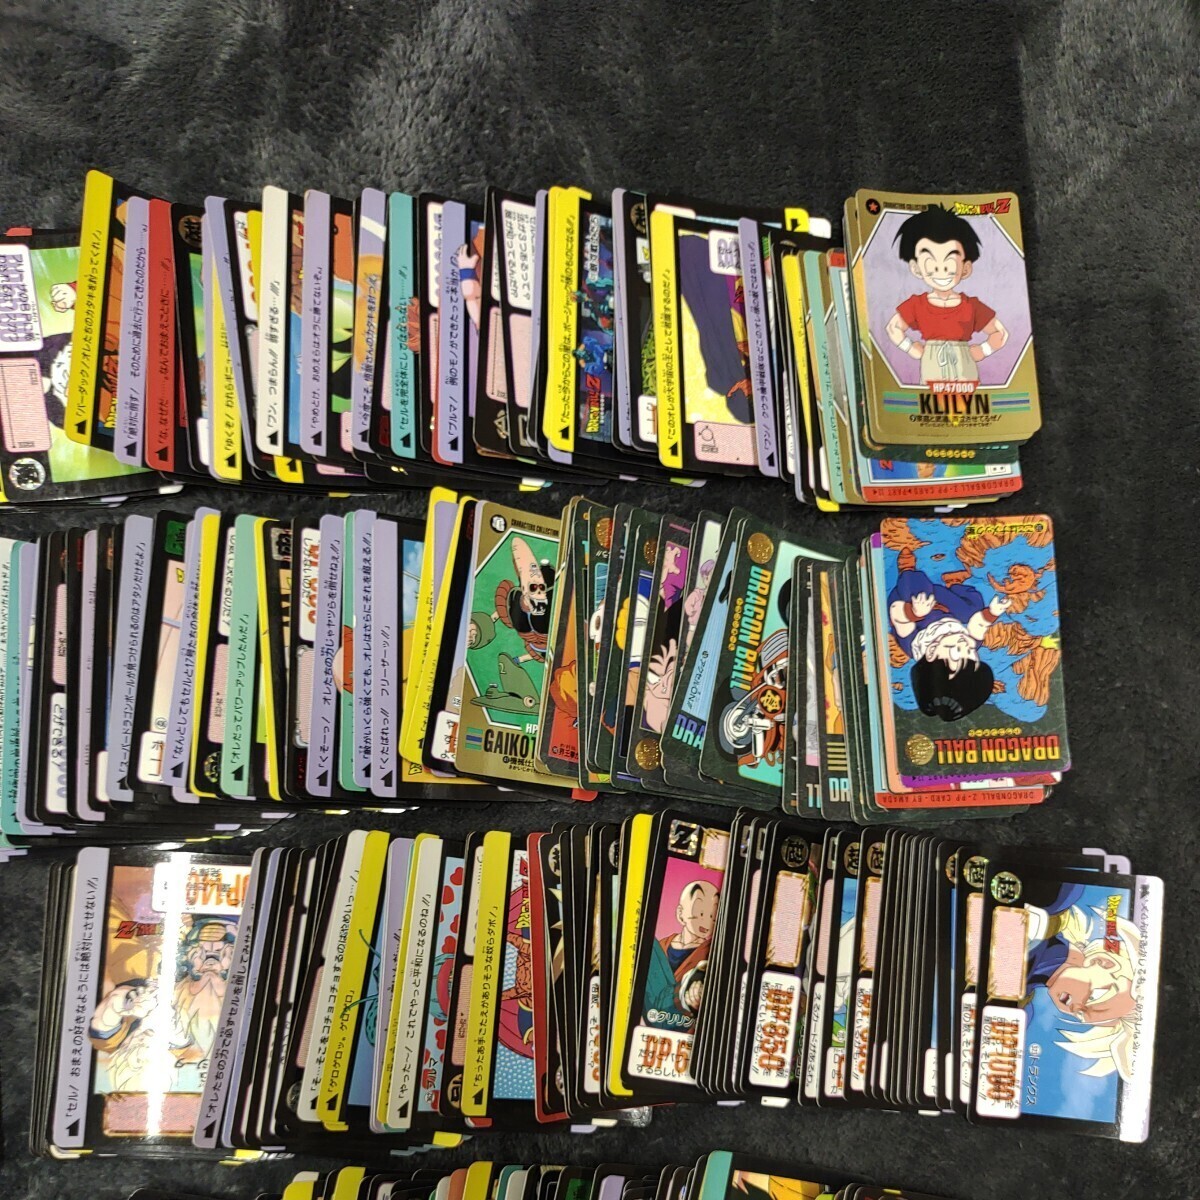 A05133 Dragon Ball Dragon Ball Z Carddas много продажа комплектом Kirakira карта коллекционные карточки DRAGON BALL 1200 листов и больше 